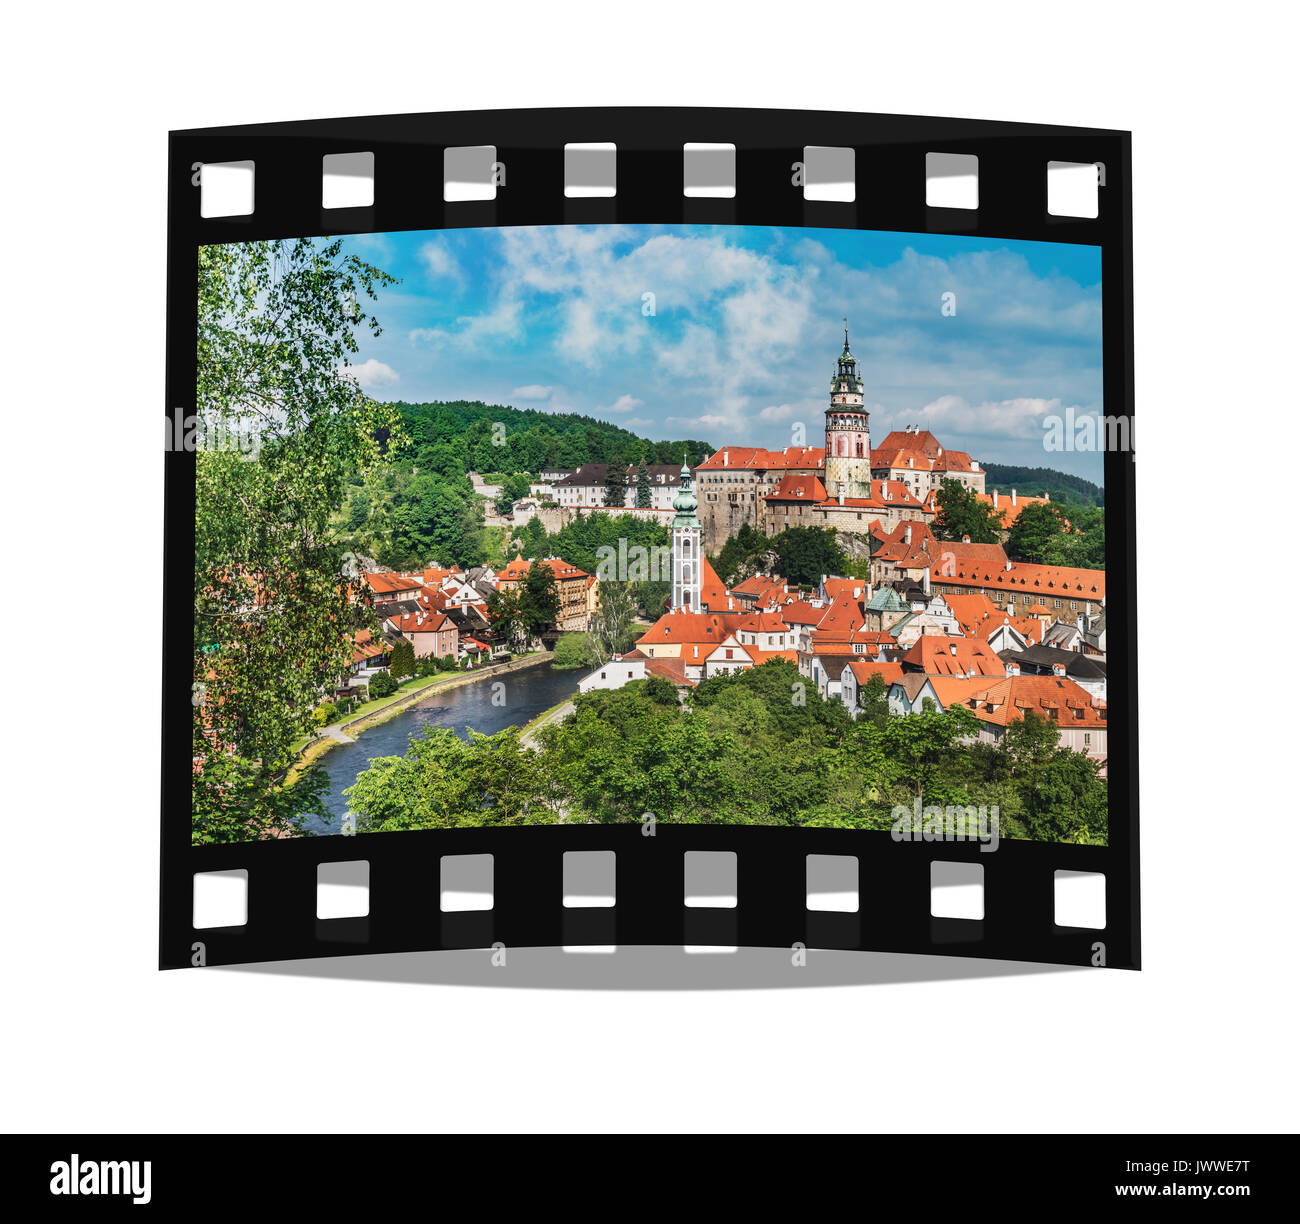 Blick auf die Altstadt von Chesky Krumlov, das Schloss Chesky Krumlov, St. Jost Kirche und Moldau, Böhmen, Jihocesky Kraj, Tschechische Republik, Europa Stockfoto